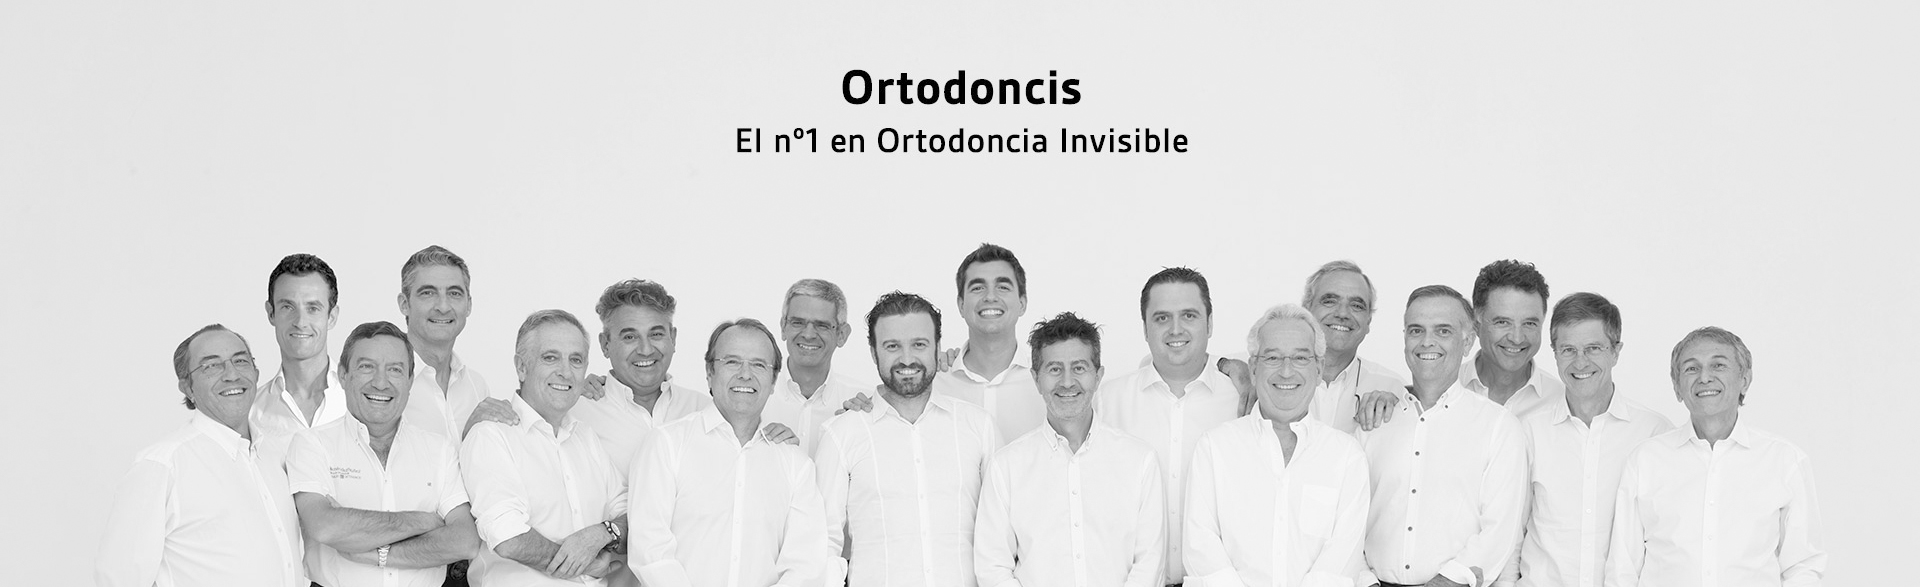 Clínicas Ortodoncis